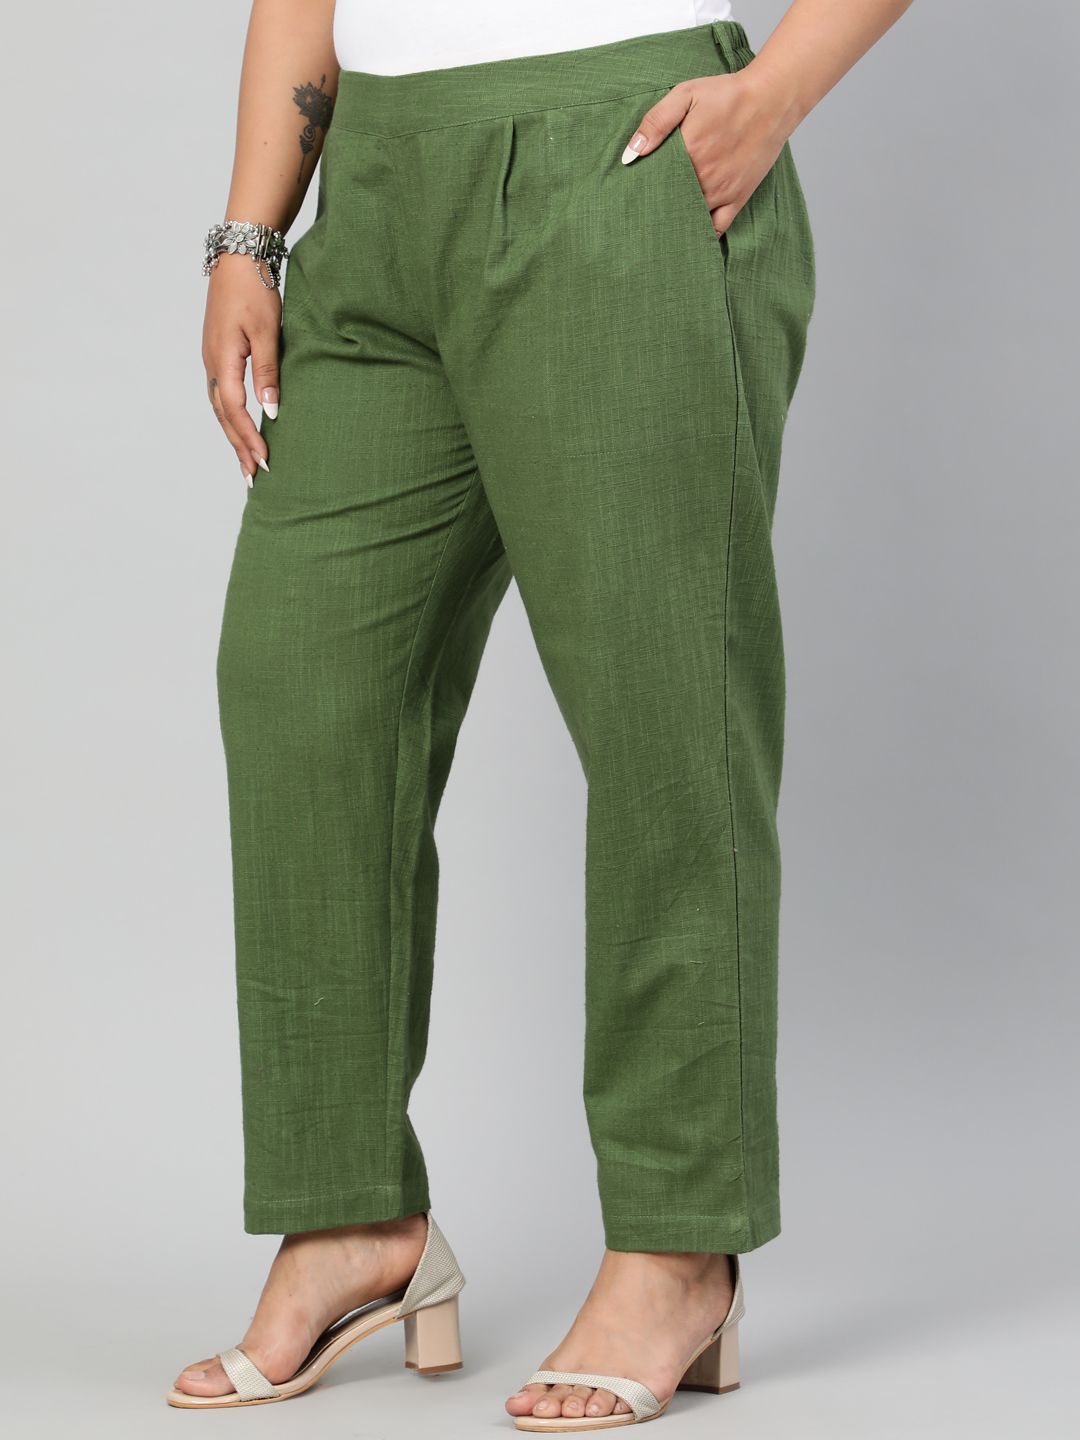 Shop casual cotton pants